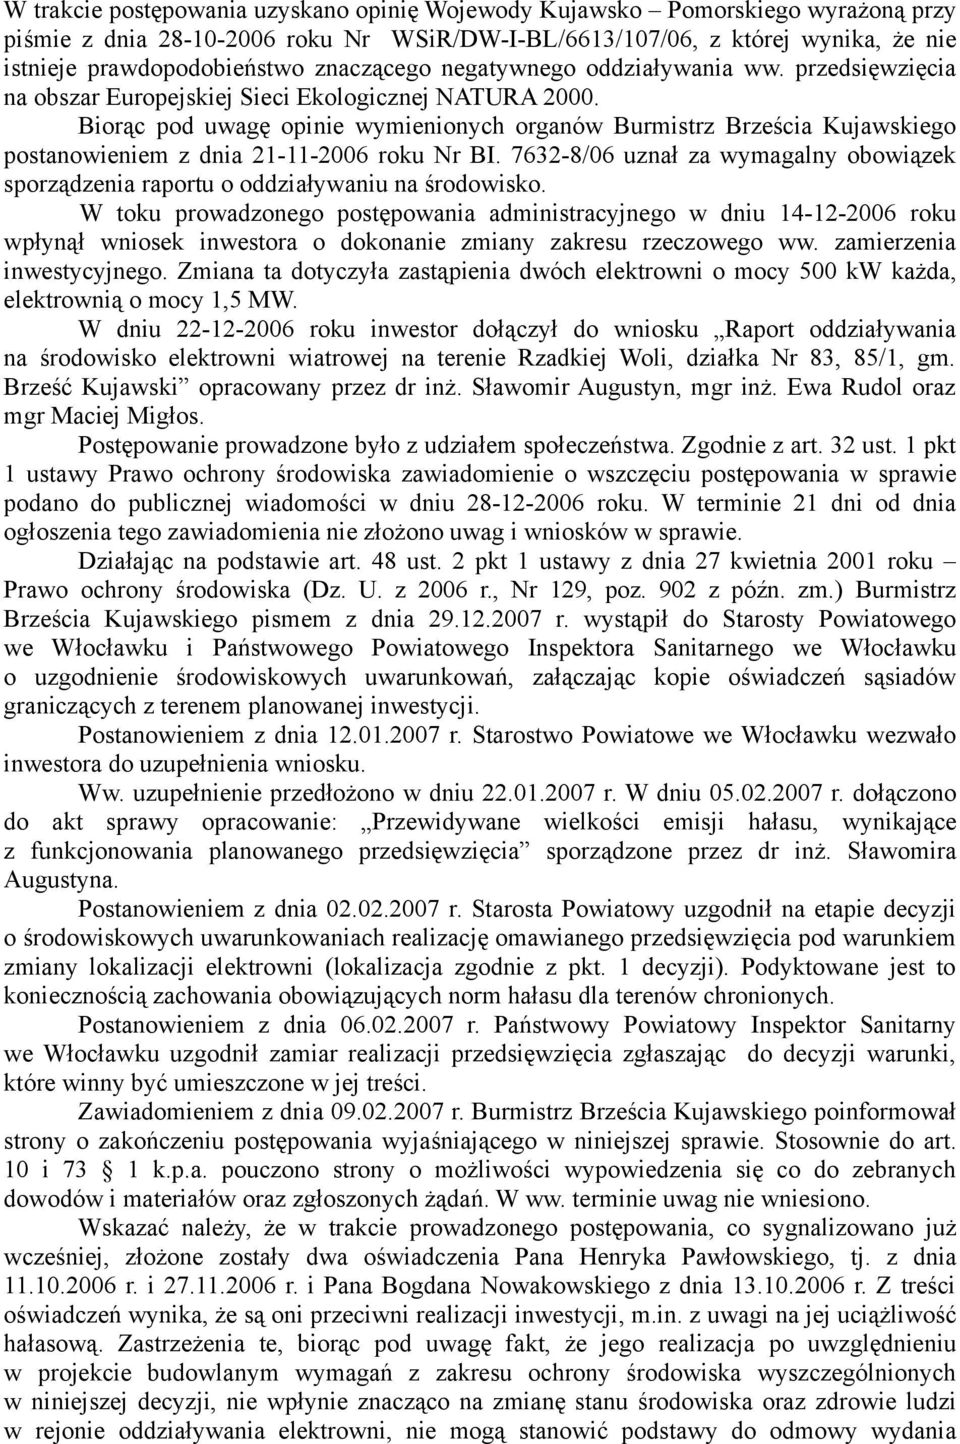 Biorąc pod uwagę opinie wymienionych organów Burmistrz Brześcia Kujawskiego postanowieniem z dnia 21-11-2006 roku Nr BI.